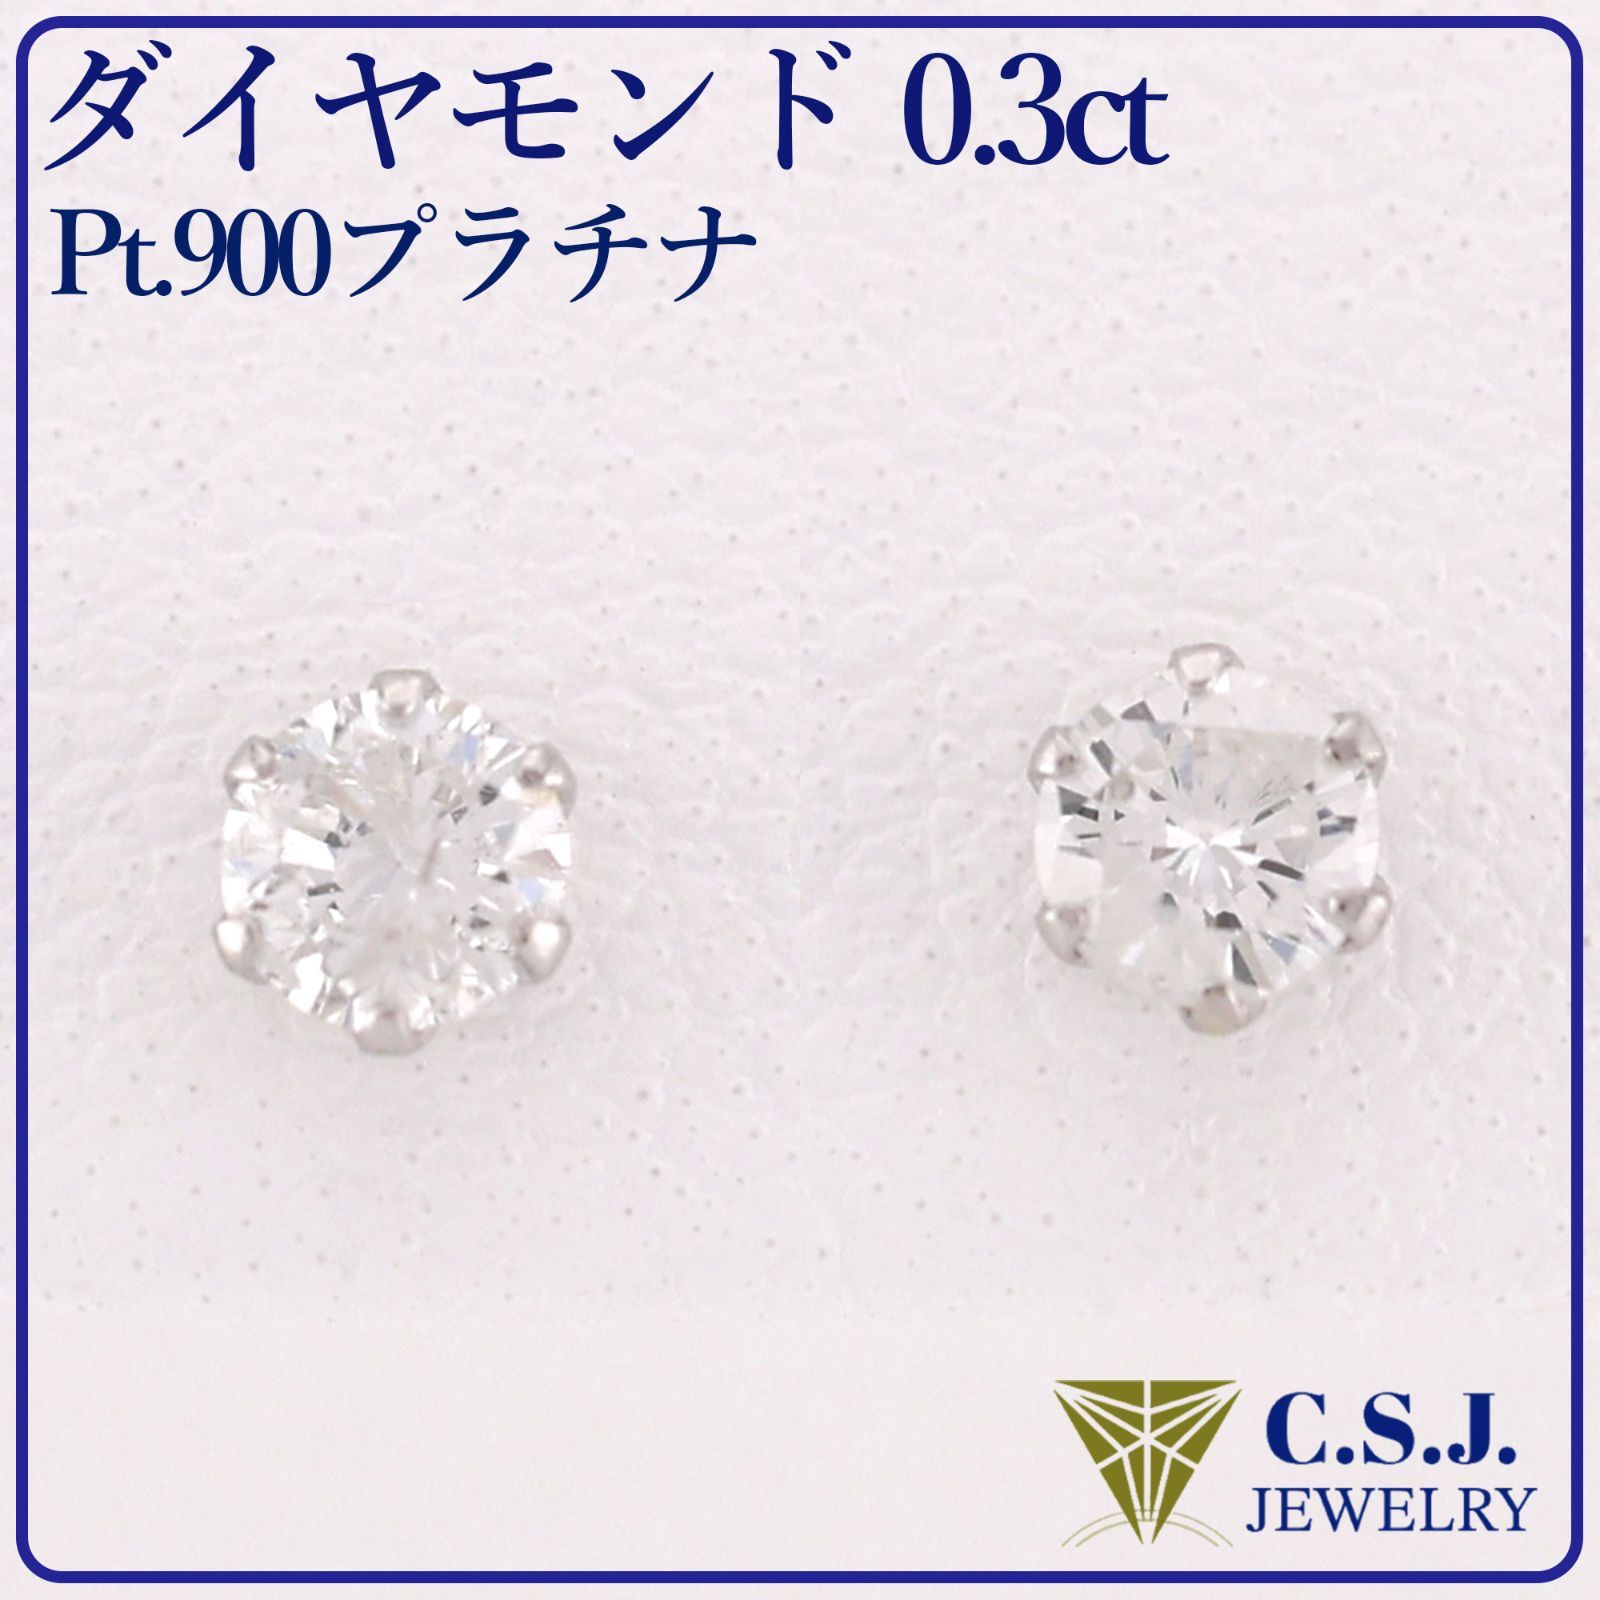 Pt.900プラチナ》 ダイヤモンド0.3ct 『ワンポイント』 セットピアス 